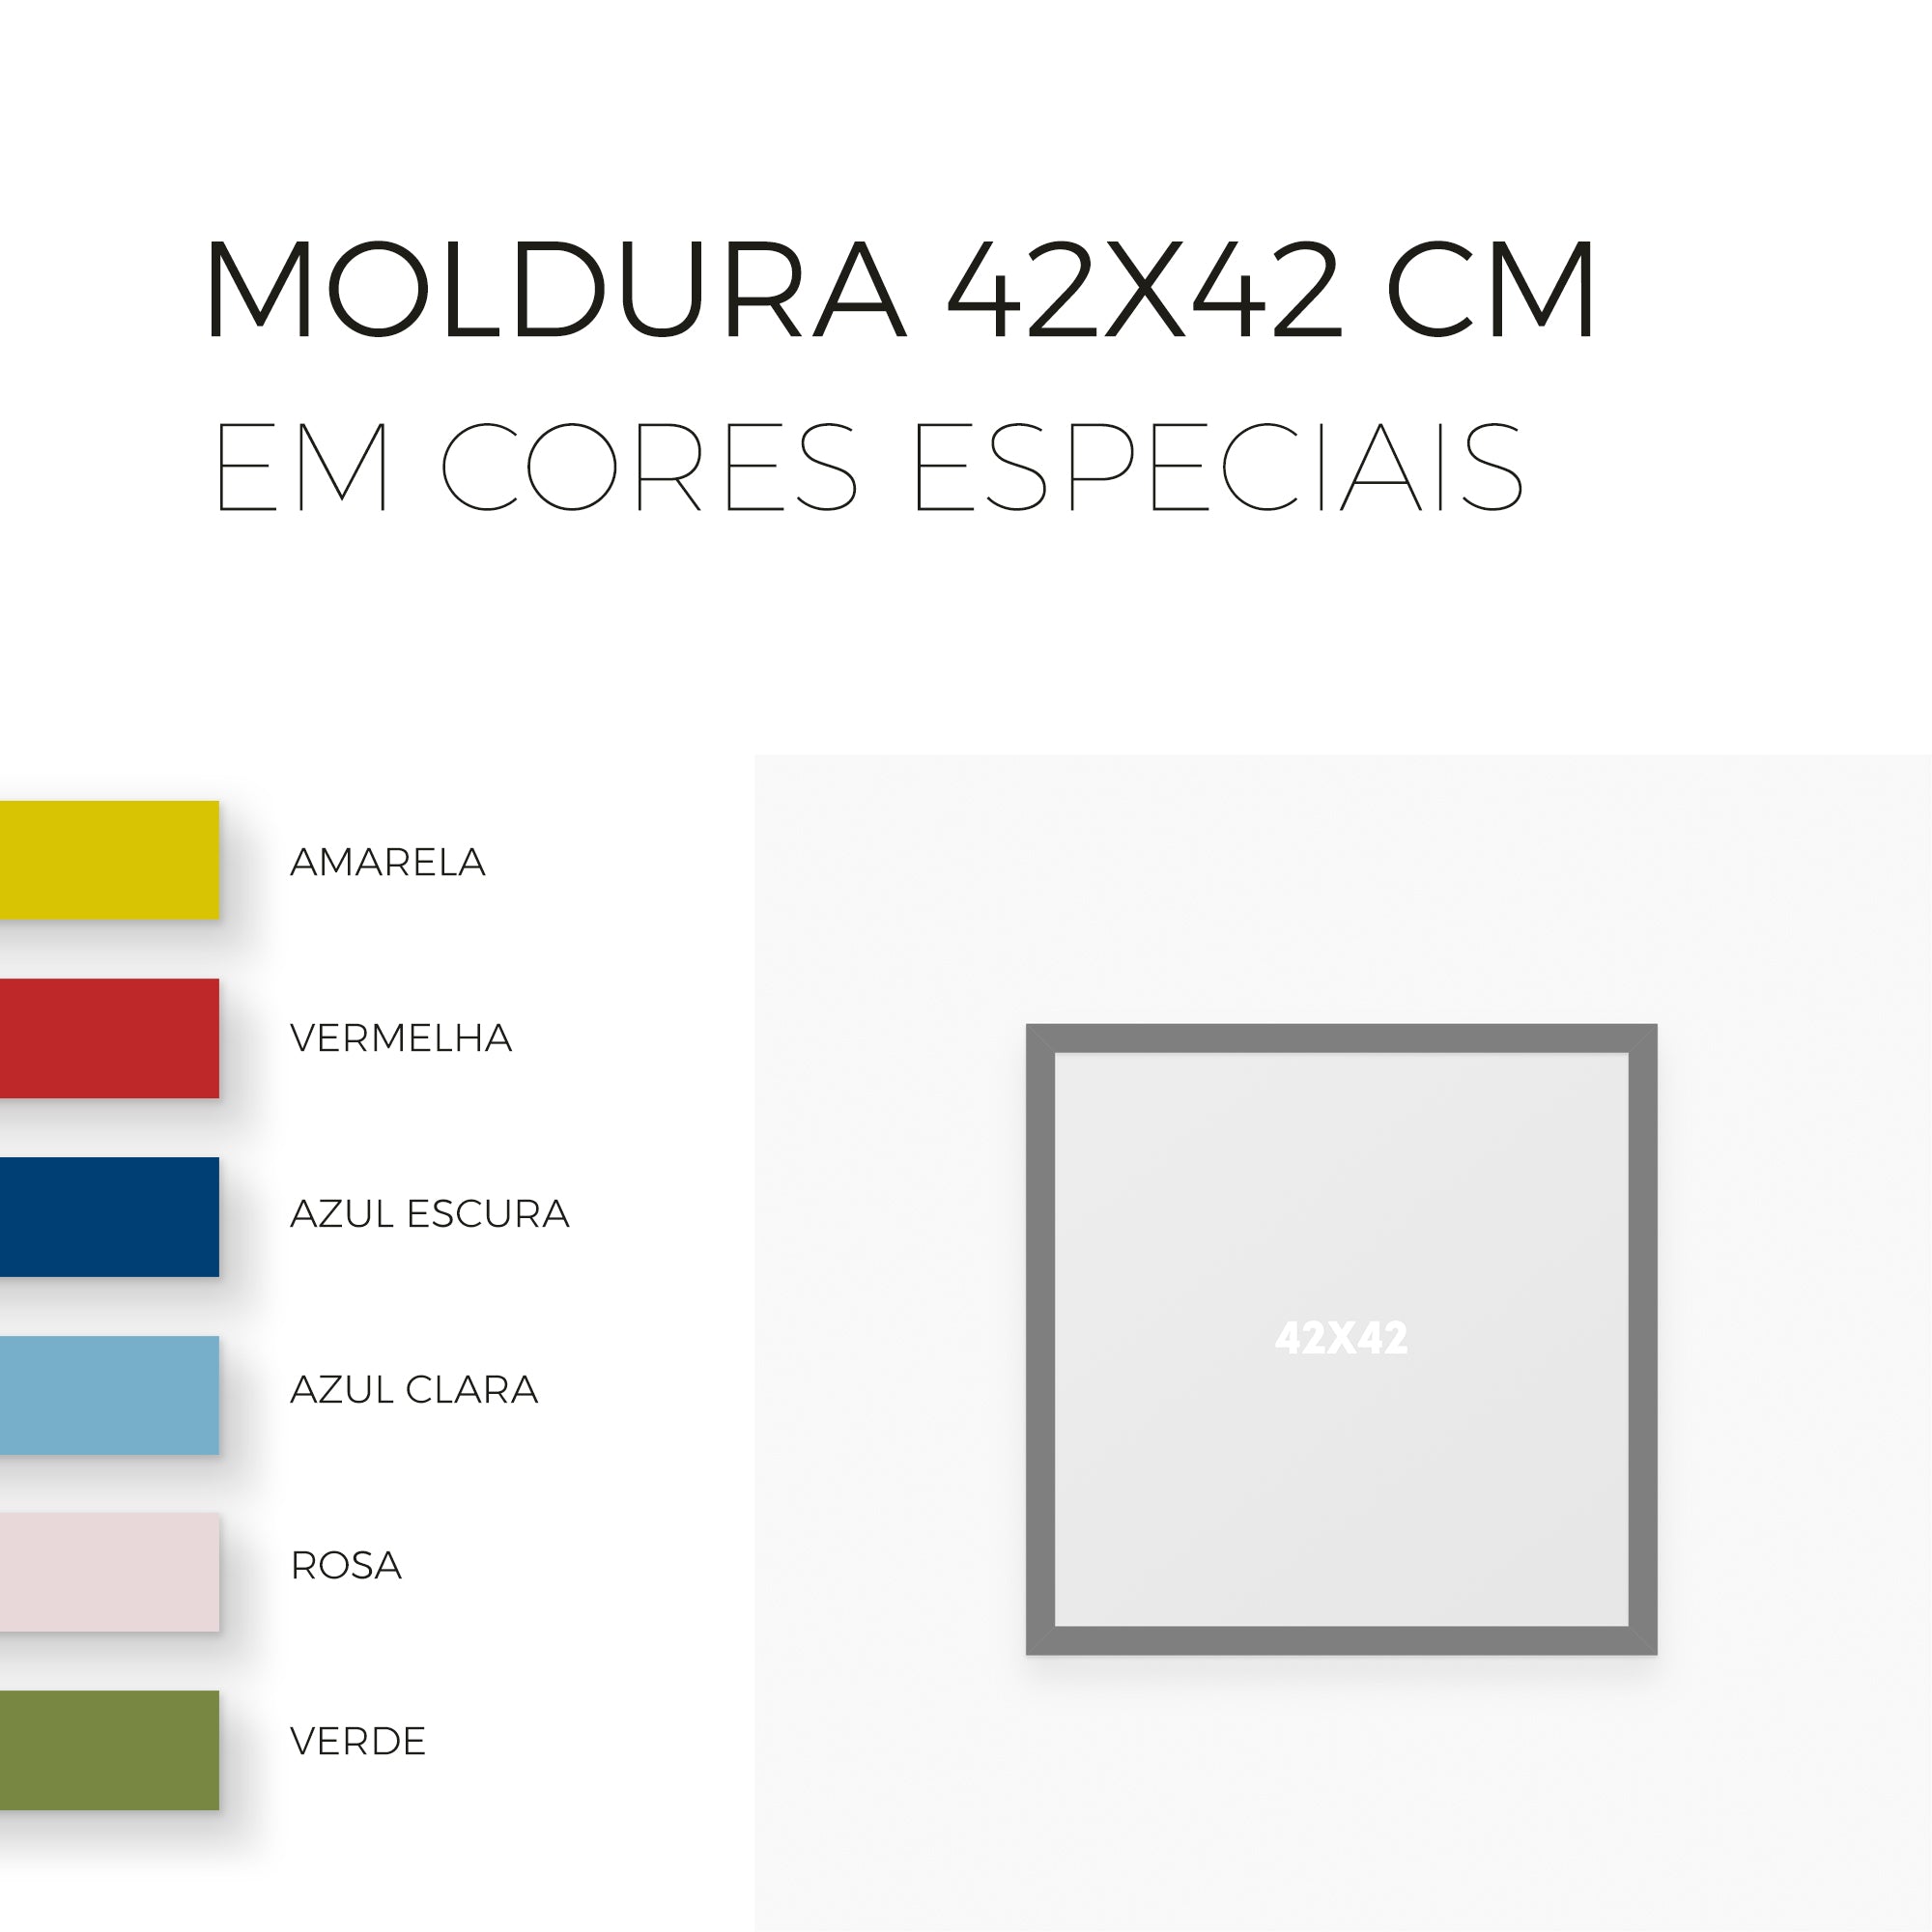 Moldura 42x42